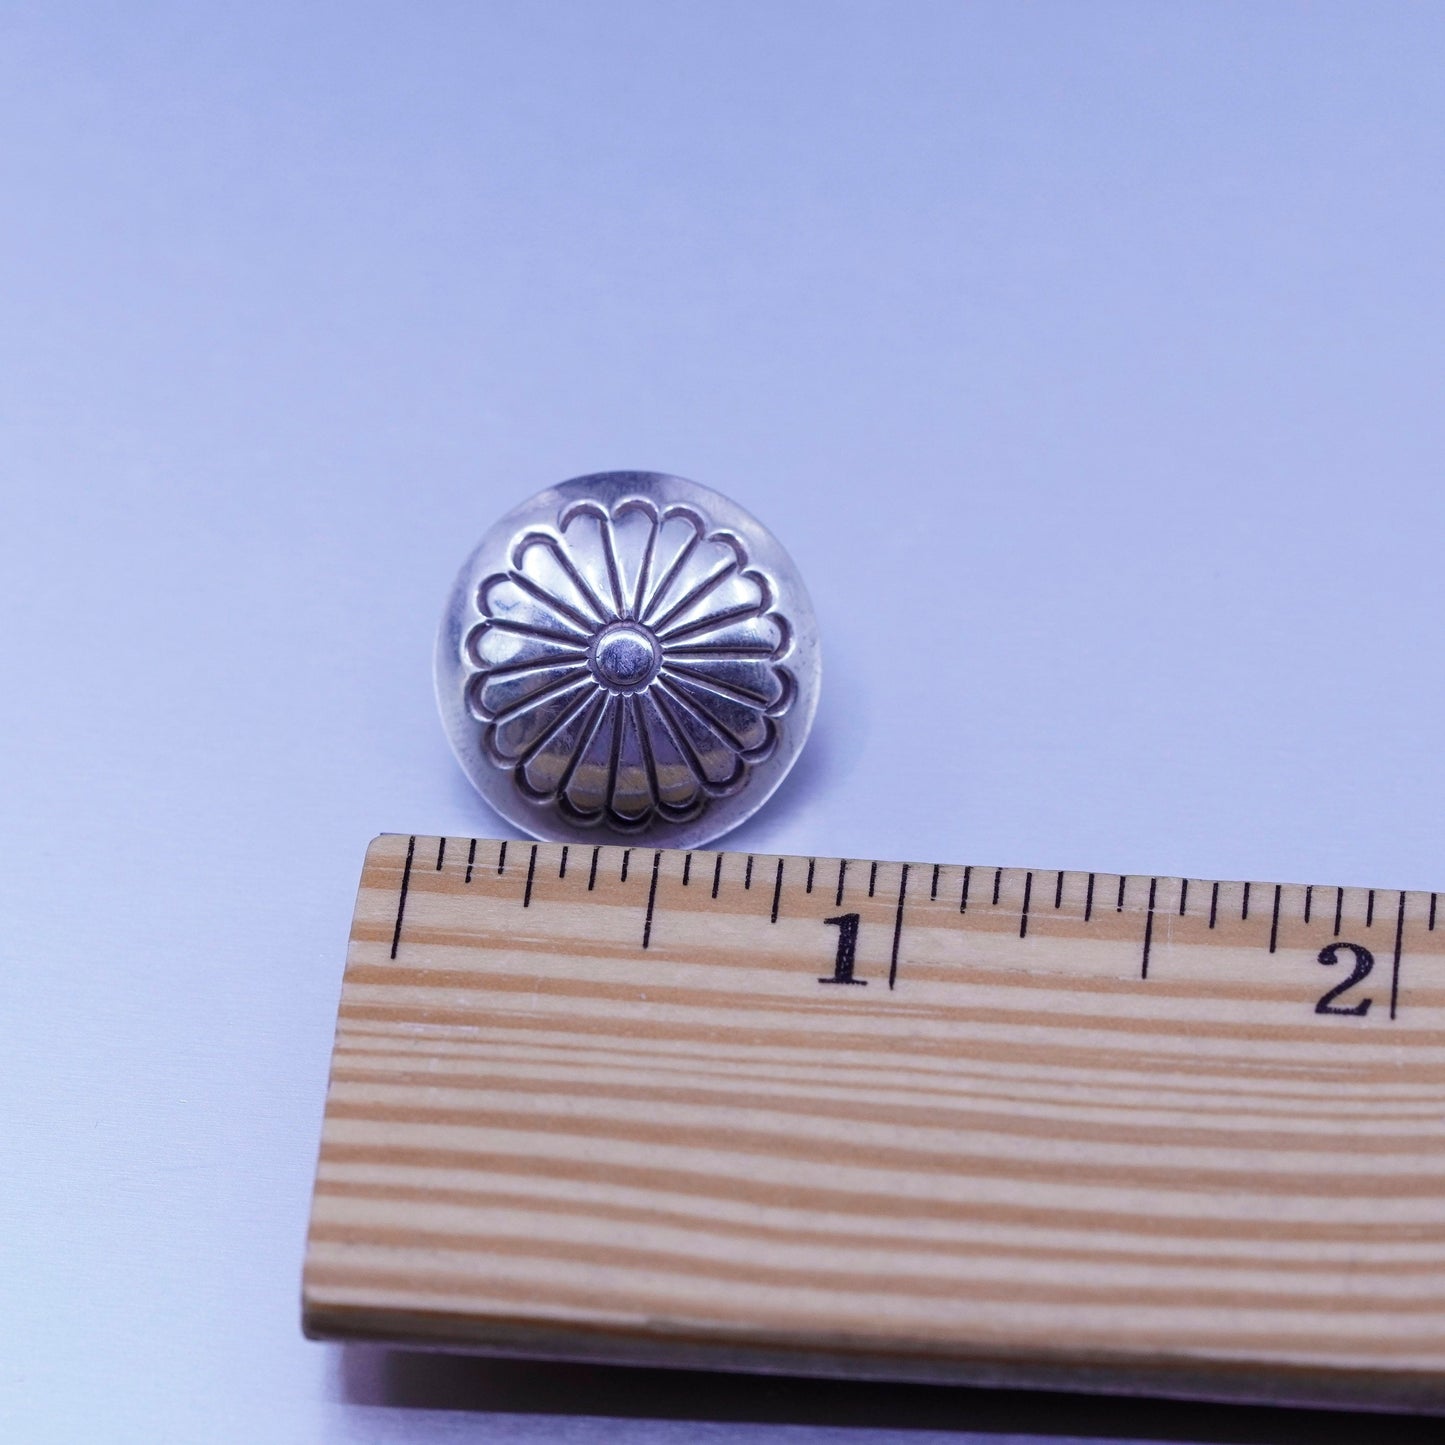 Vintage Sterling 925 silver handmade earrings, circle bead studs